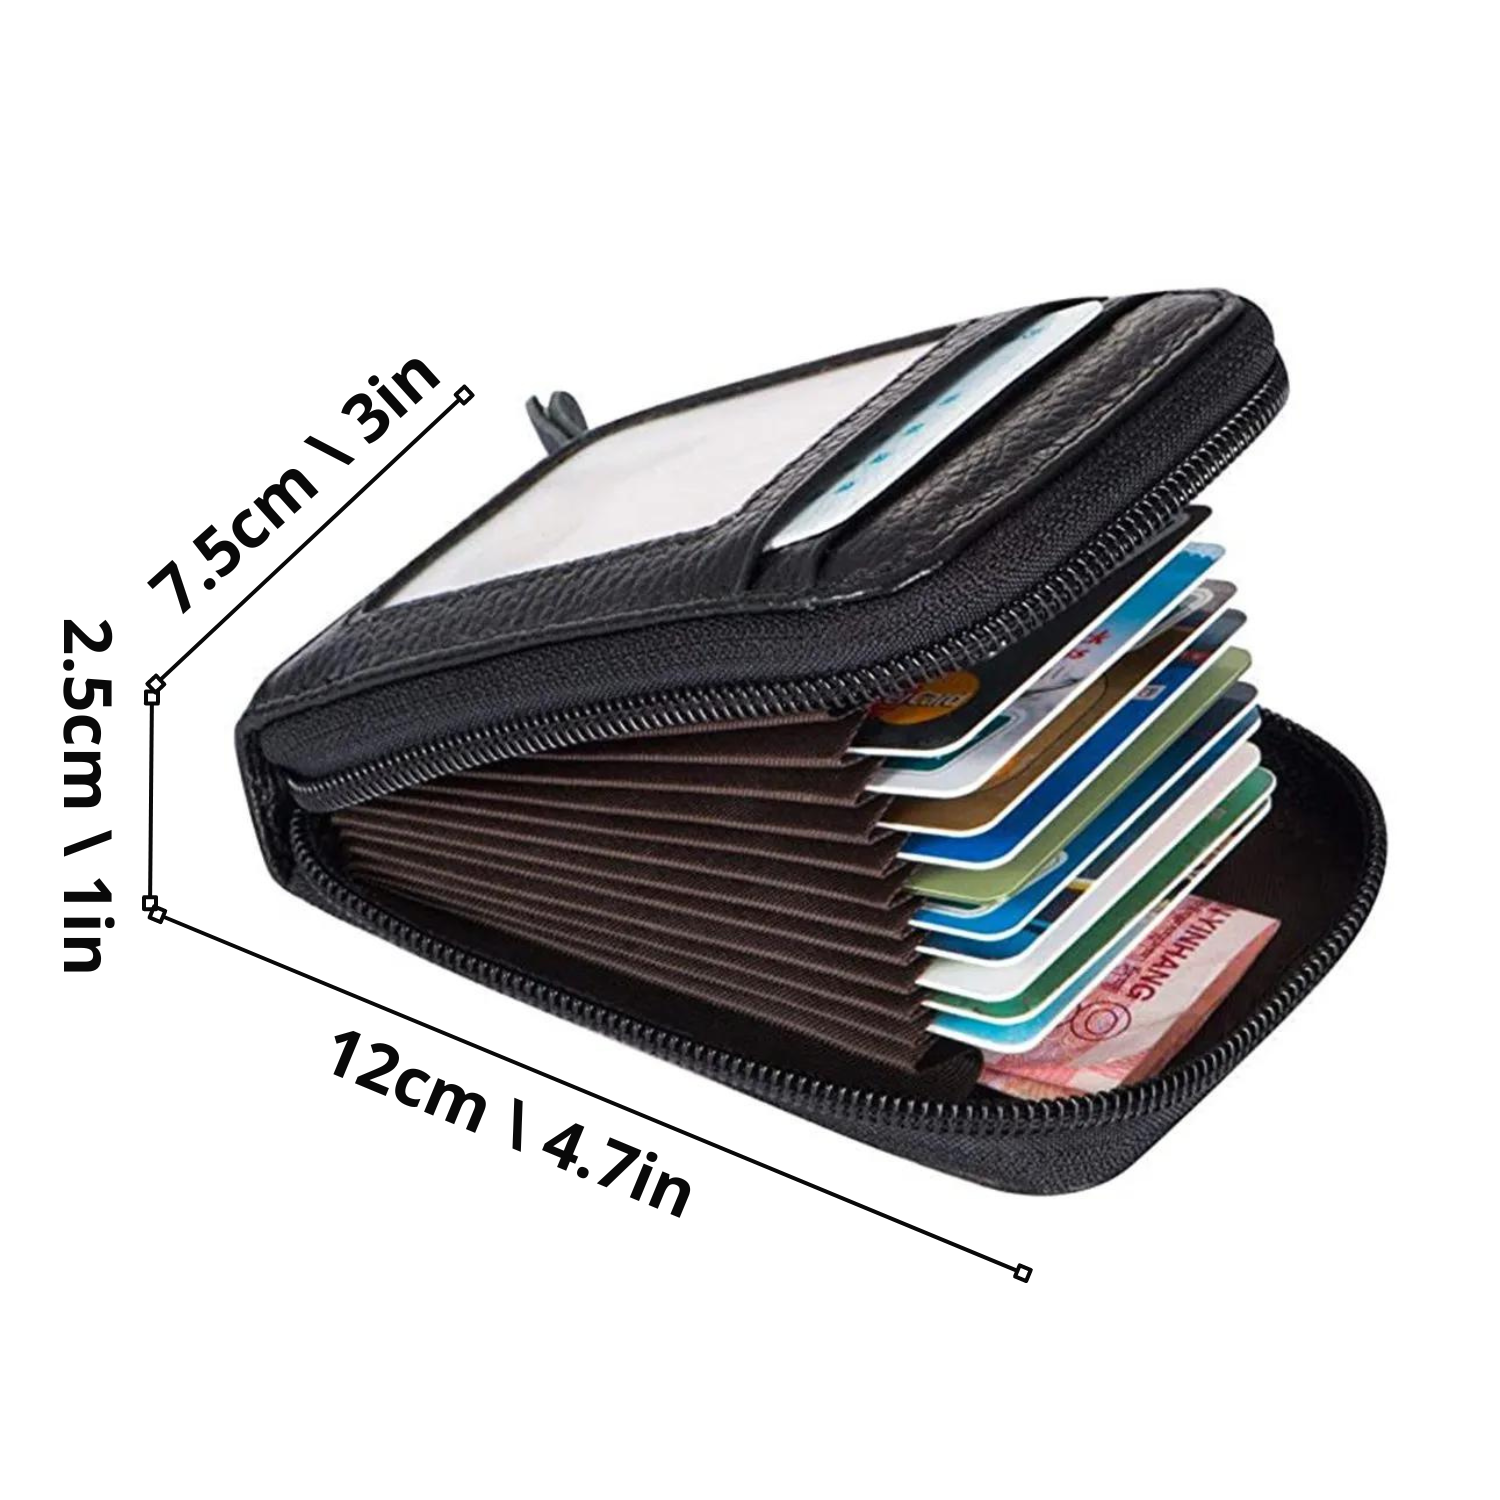 Sleek Pocket Organizer: Modern PU Leather Wallet for Essentials